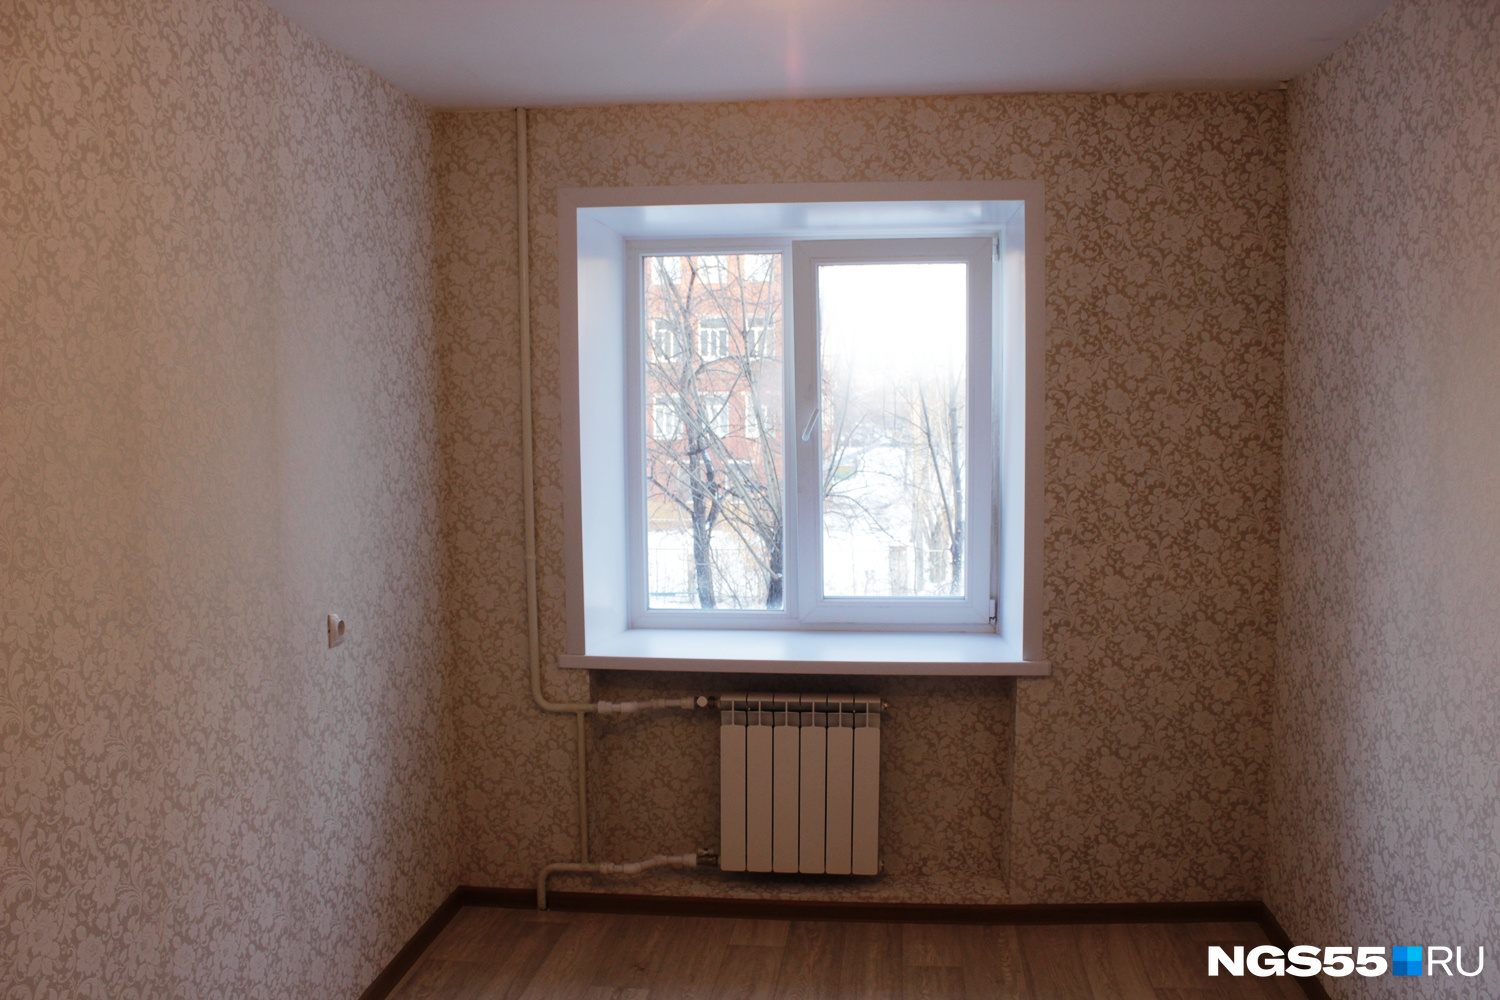 По словам Евгения Фомина, семья Бакаевых может возвращаться в квартиру сразу после того, как их выпишут из больницы